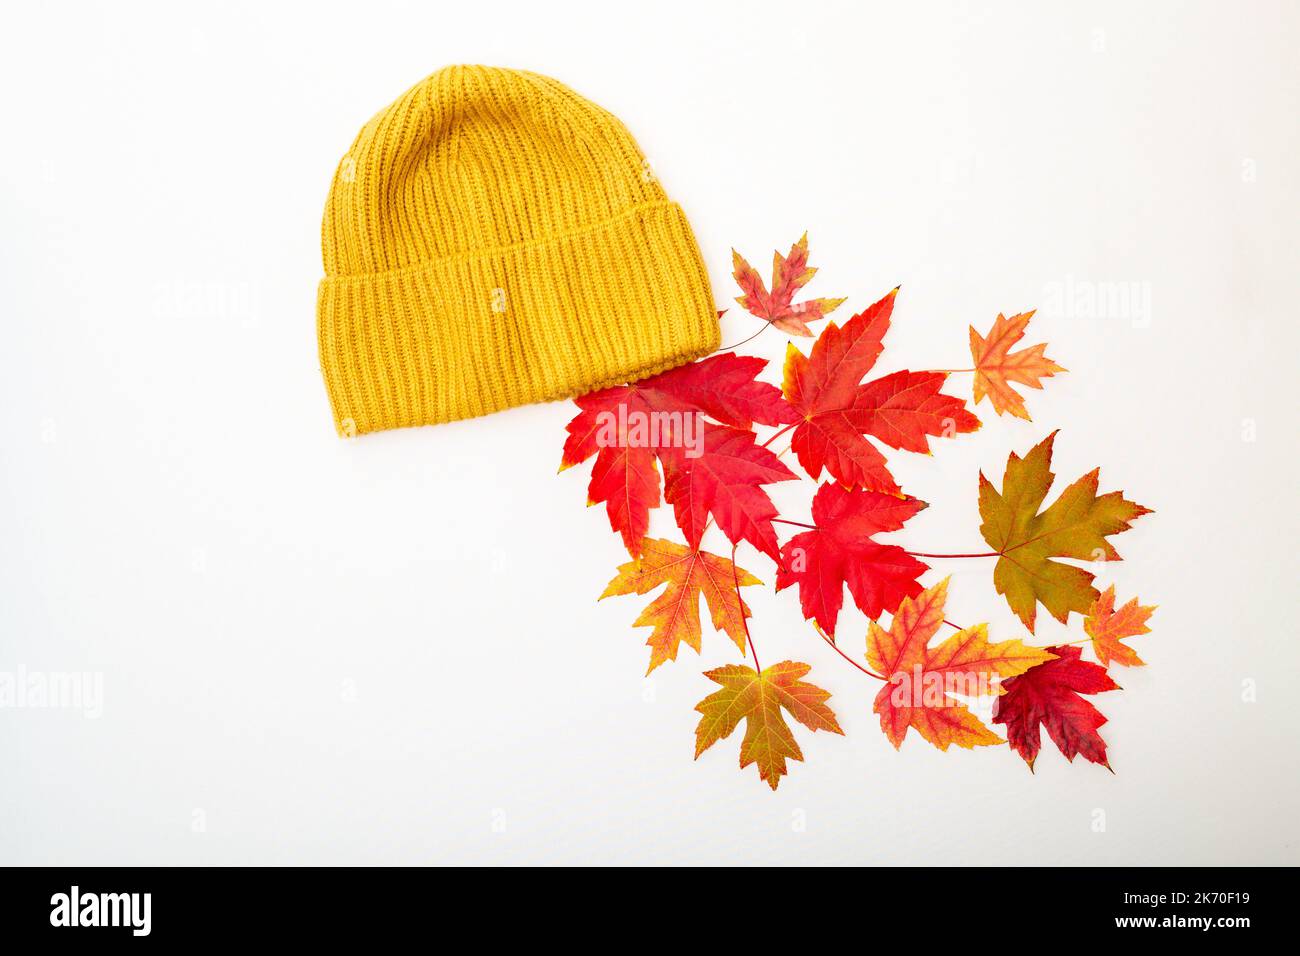 Le foglie di acero rosso naturale cadono da un cappello giallo lavorato a maglia. Abiti caldi per il freddo nella stagione autunnale. Vista dall'alto, immagine minima, spazio di copia.Autunno Foto Stock